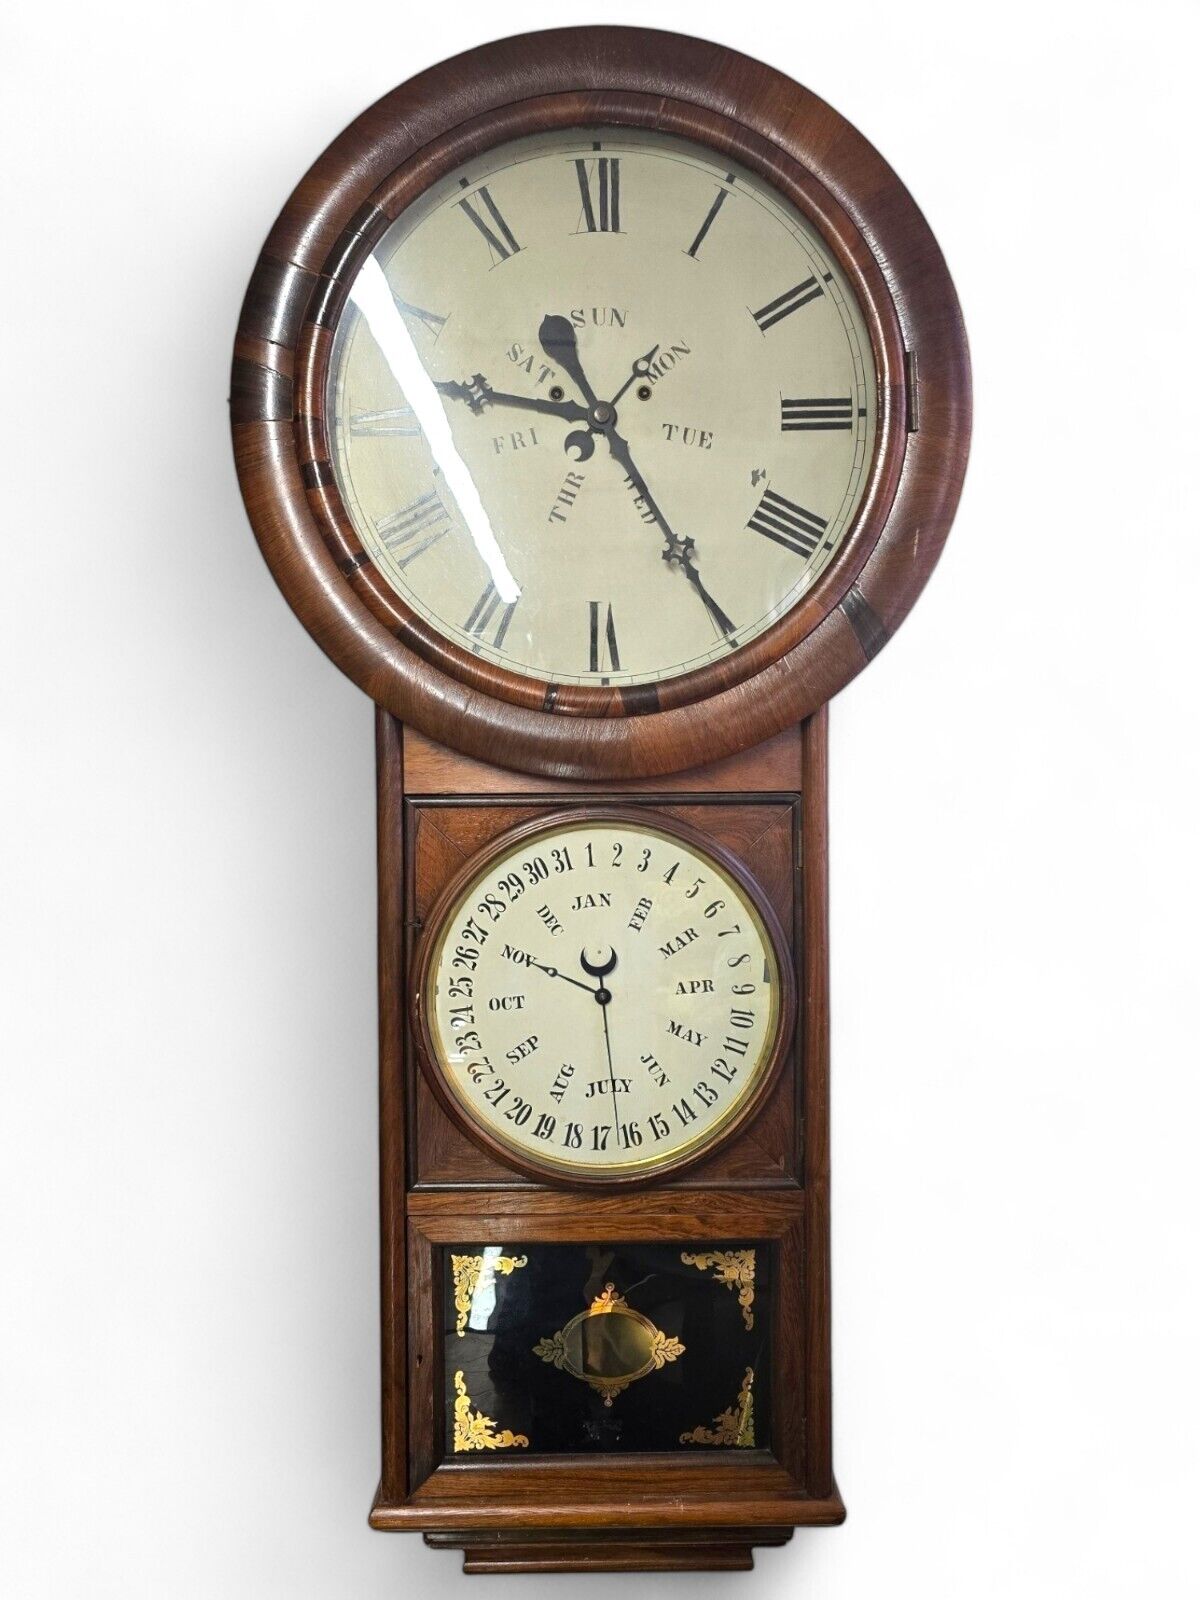 Ca. 1878 Welch Spring & Co Regulator No 1 - Lewis Calendar Wall Regulator Clock